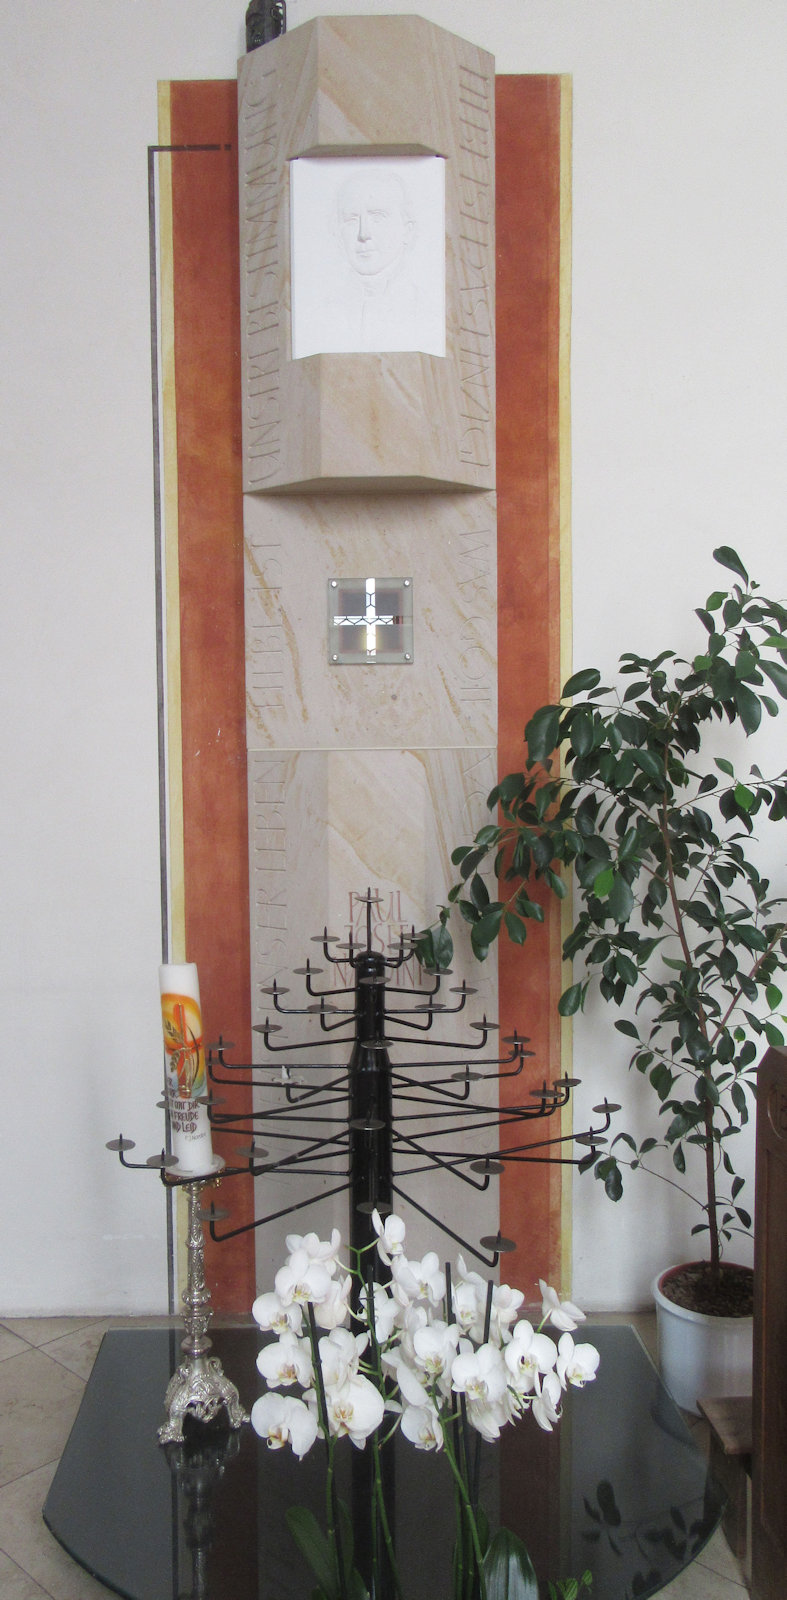 Bernhard Matthäss: Stele zum Gedenken an Paul Josef Nardini mit einer Reliquie, 2008, in der Pfarrkirche St. Peter und Paul in Geinsheim